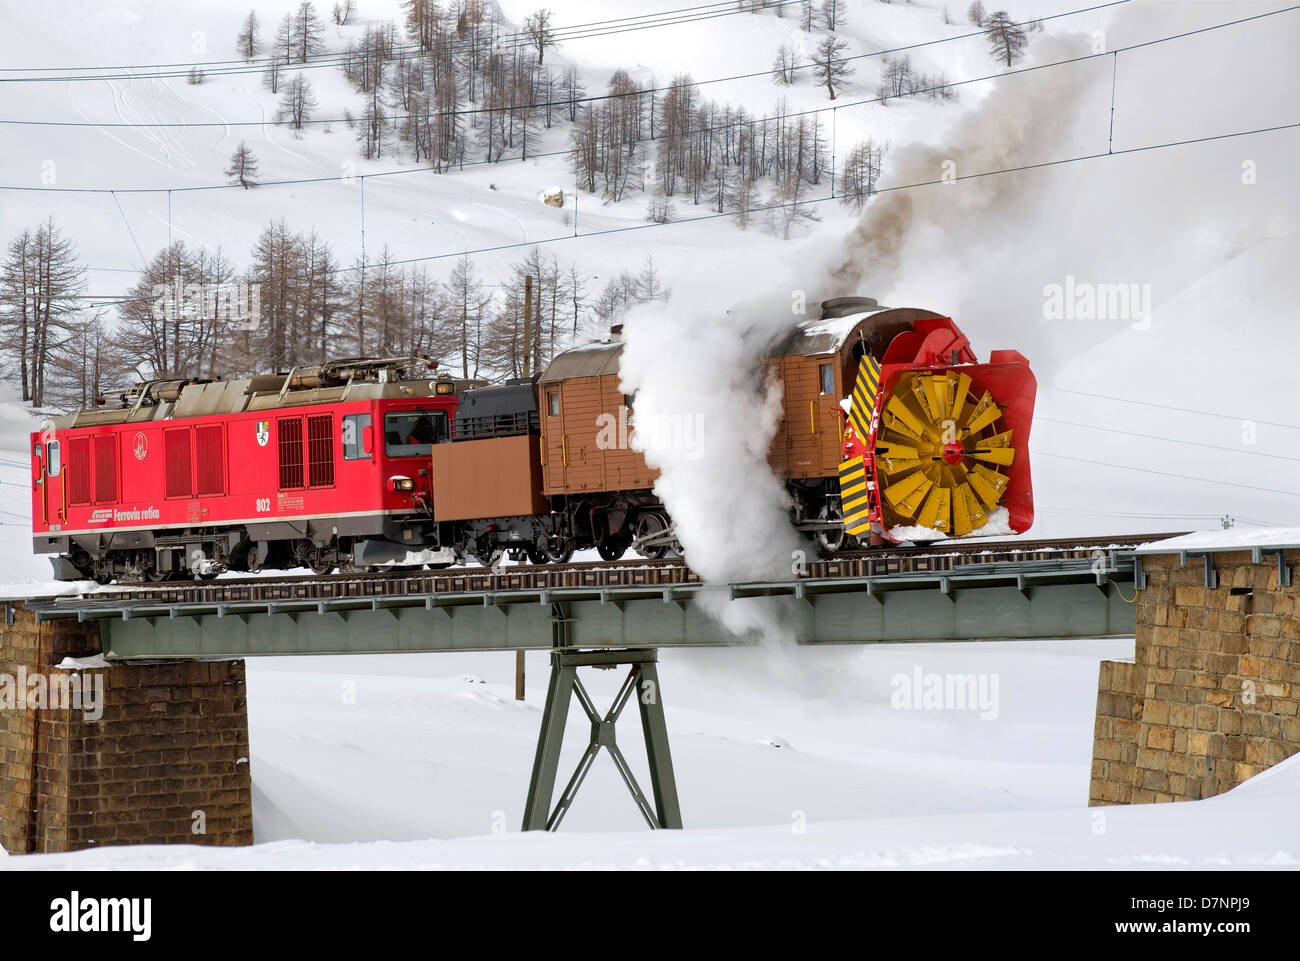 Snow blower train at Bernina Pass, Switzerland Stock Photo